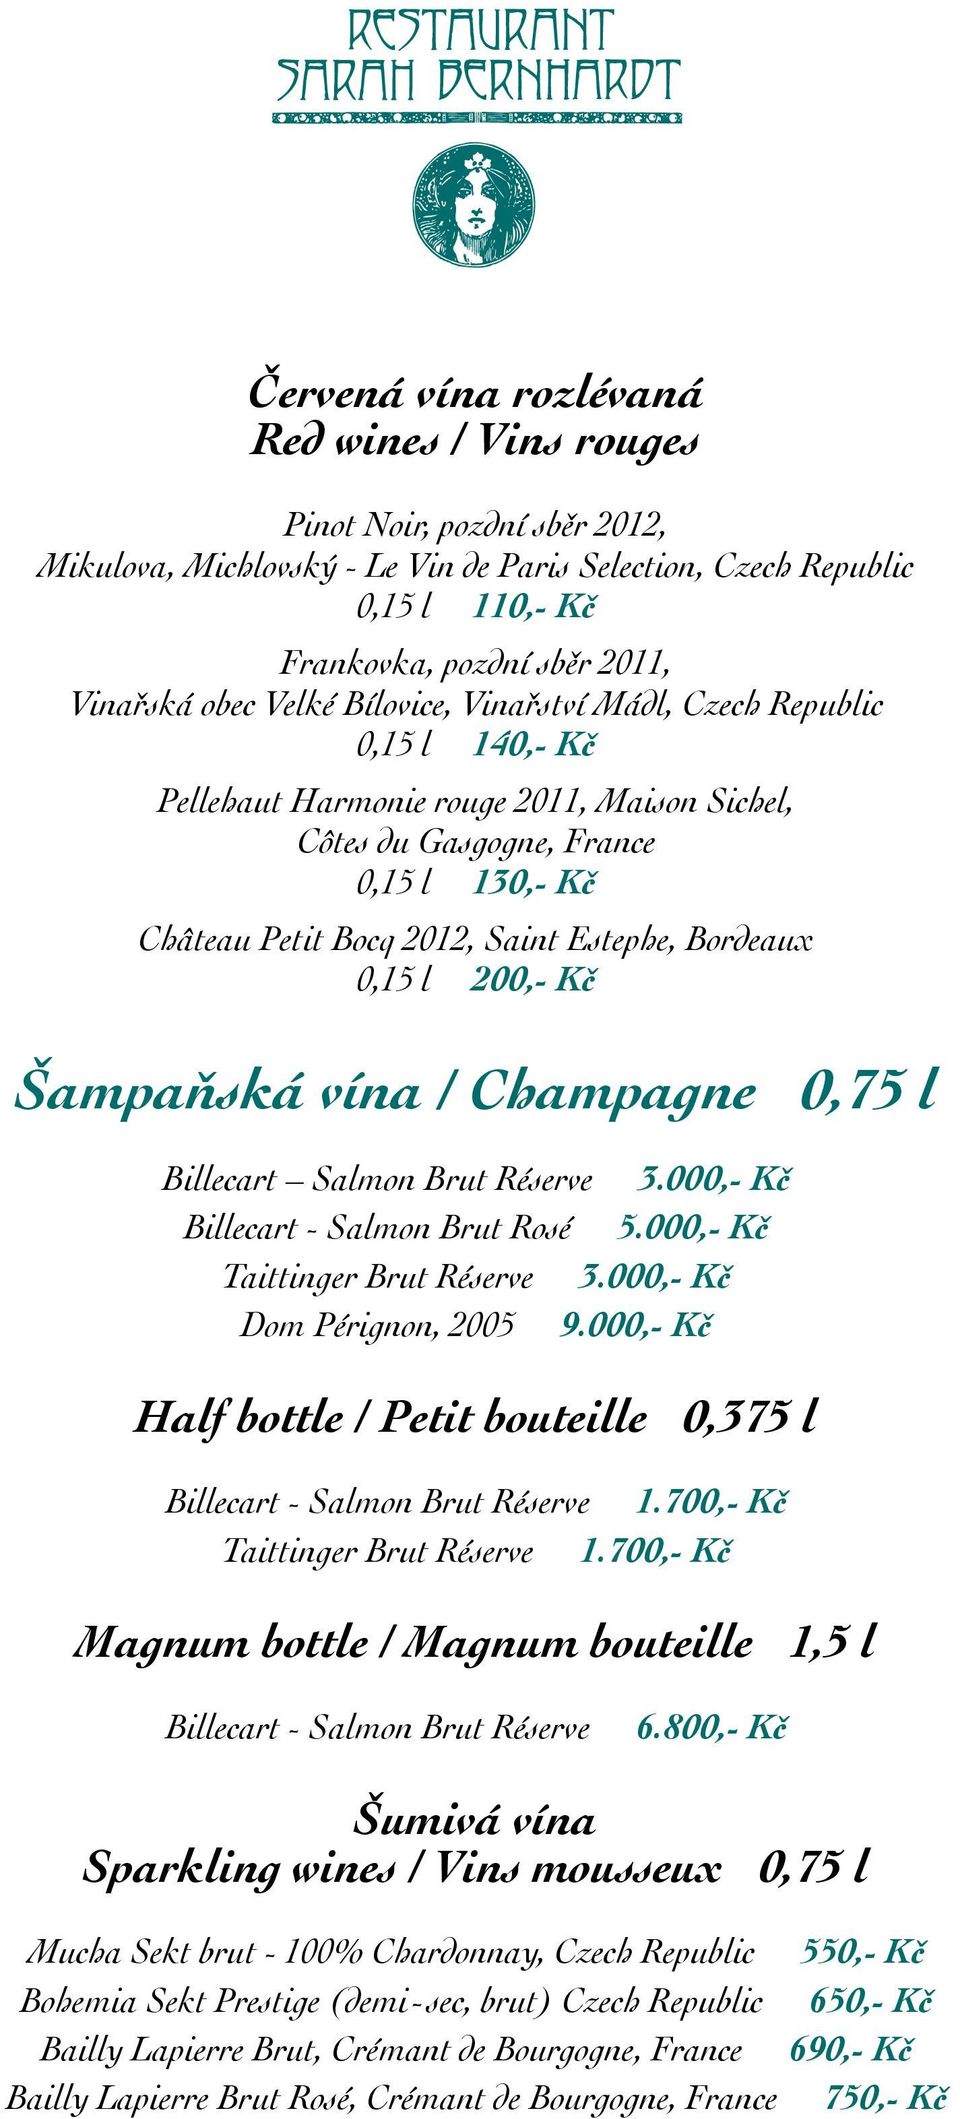 Bordeaux 0,15 l 200,- Kč Šampaňská vína / Champagne 0,75 l Billecart Salmon Brut Réserve 3.000,- Kč Billecart - Salmon Brut Rosé 5.000,- Kč Taittinger Brut Réserve 3.000,- Kč Dom Pérignon, 2005 9.